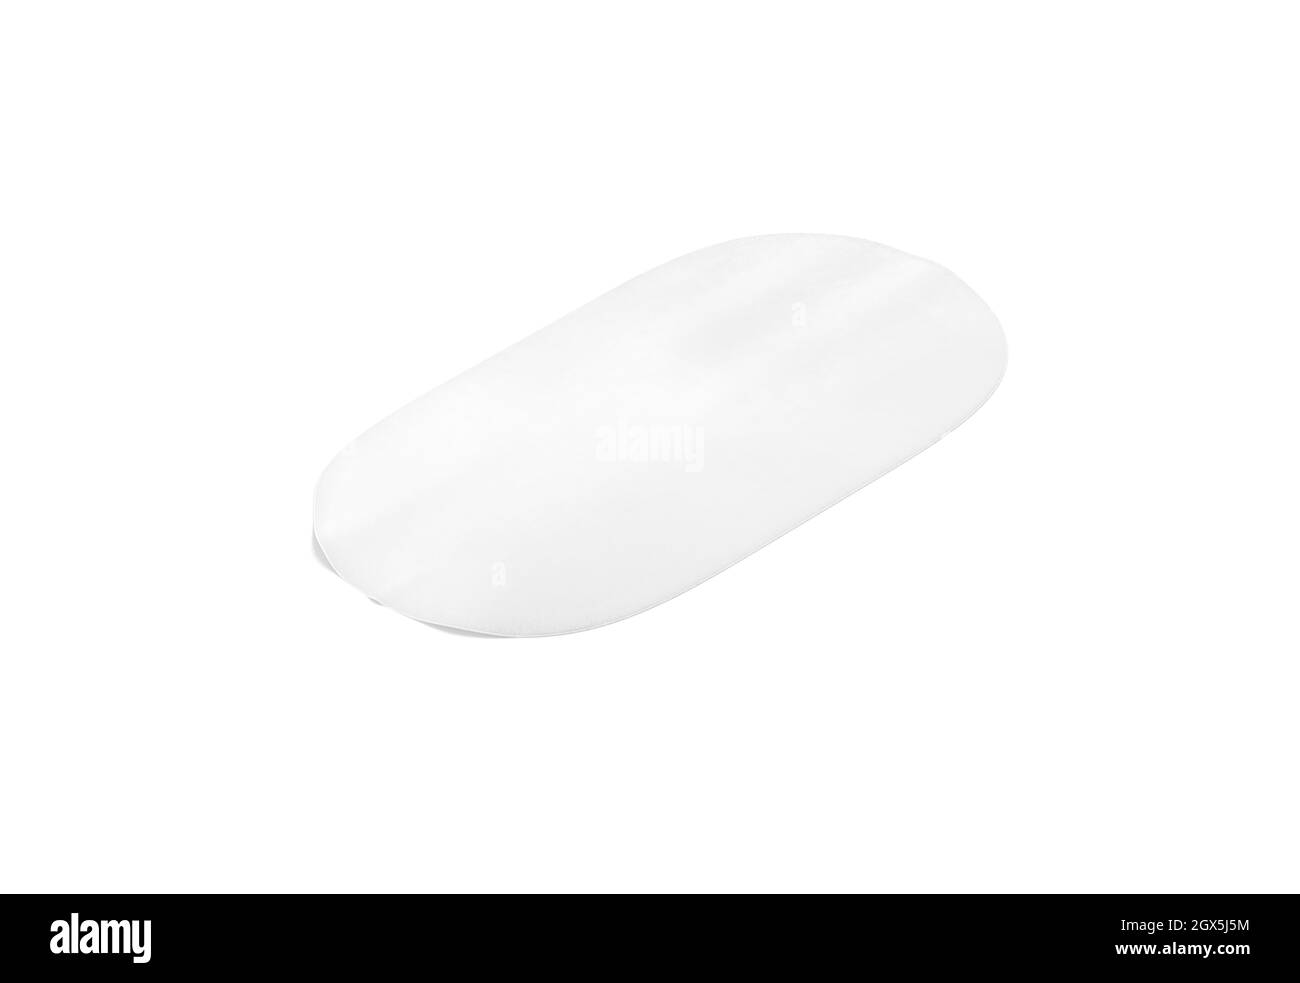 Maquette de moquette intérieure ovale blanc vierge, vue latérale, rendu 3d. Maquette de revêtement de sol décoratif vide, isolée. Porte en tissu transparent ou en fourrure Banque D'Images